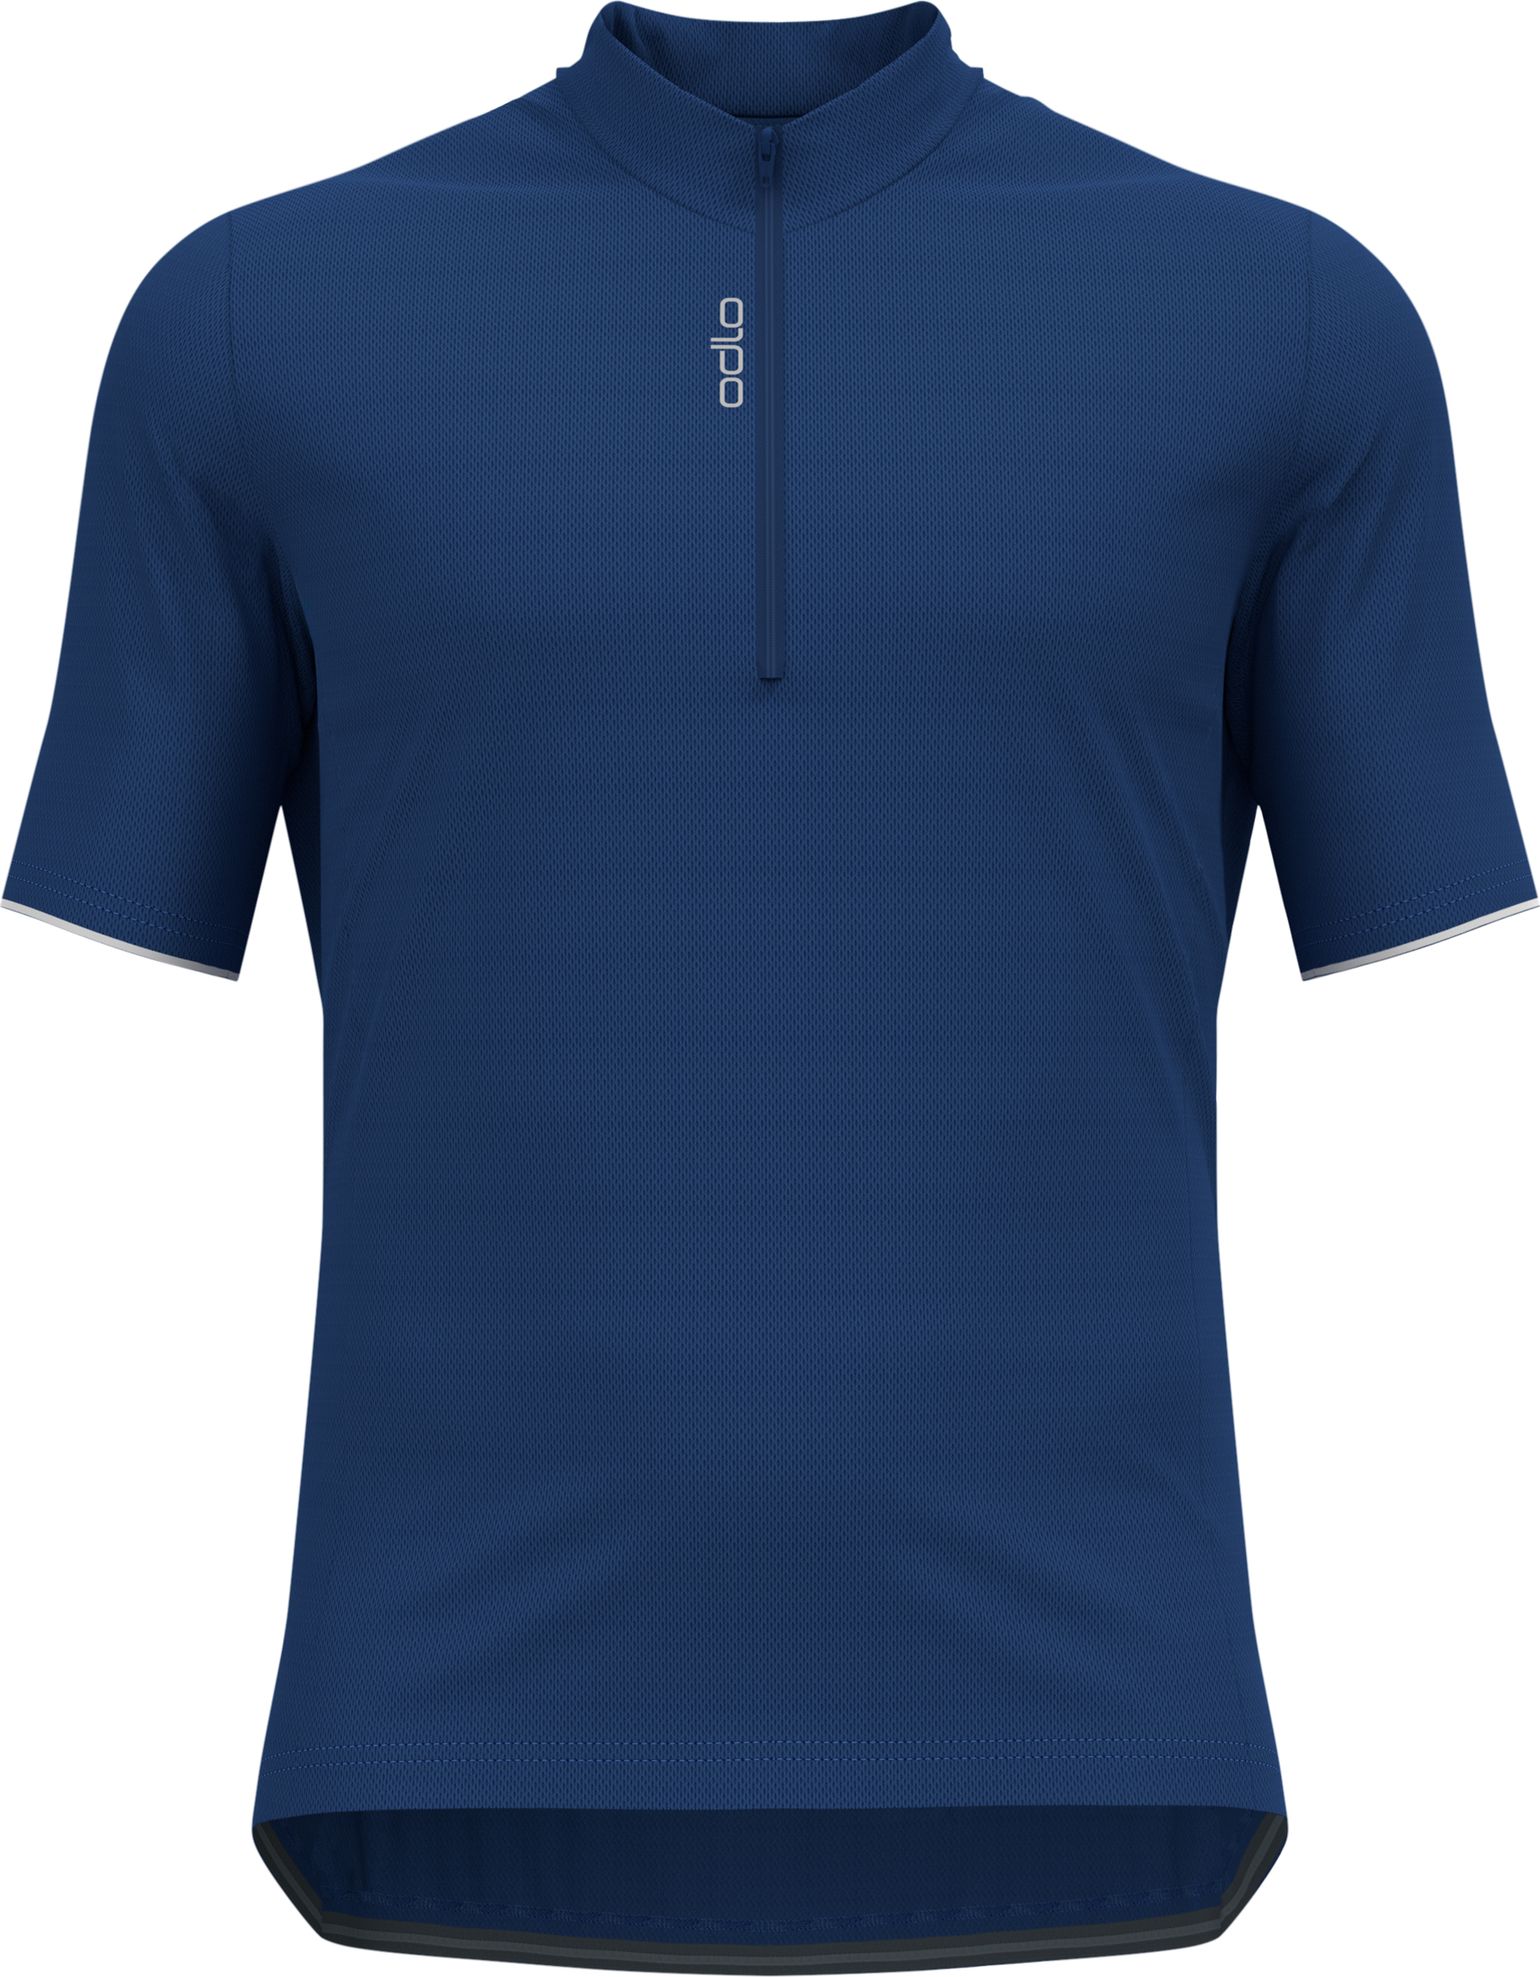 Odlo Men's T-shirt S/U Collar S/S 1/2 Zip Essential Limoges